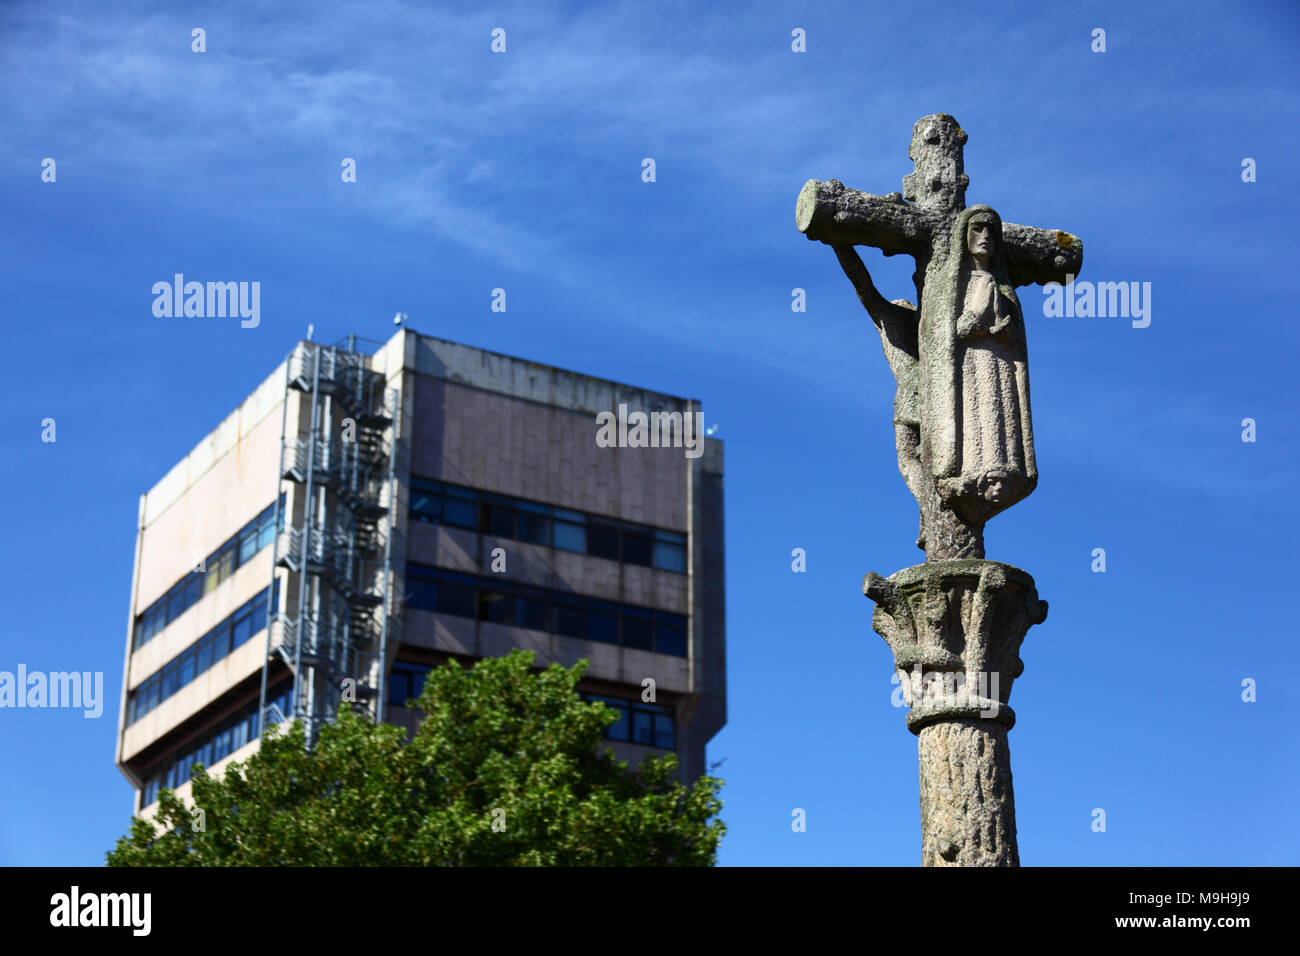 Croix traditionnelle régionale de calvaire en pierre appelée crucero / cruceiro, Conseil de ville / Concello bâtiment en arrière-plan, Vigo, Galice, Spa Banque D'Images